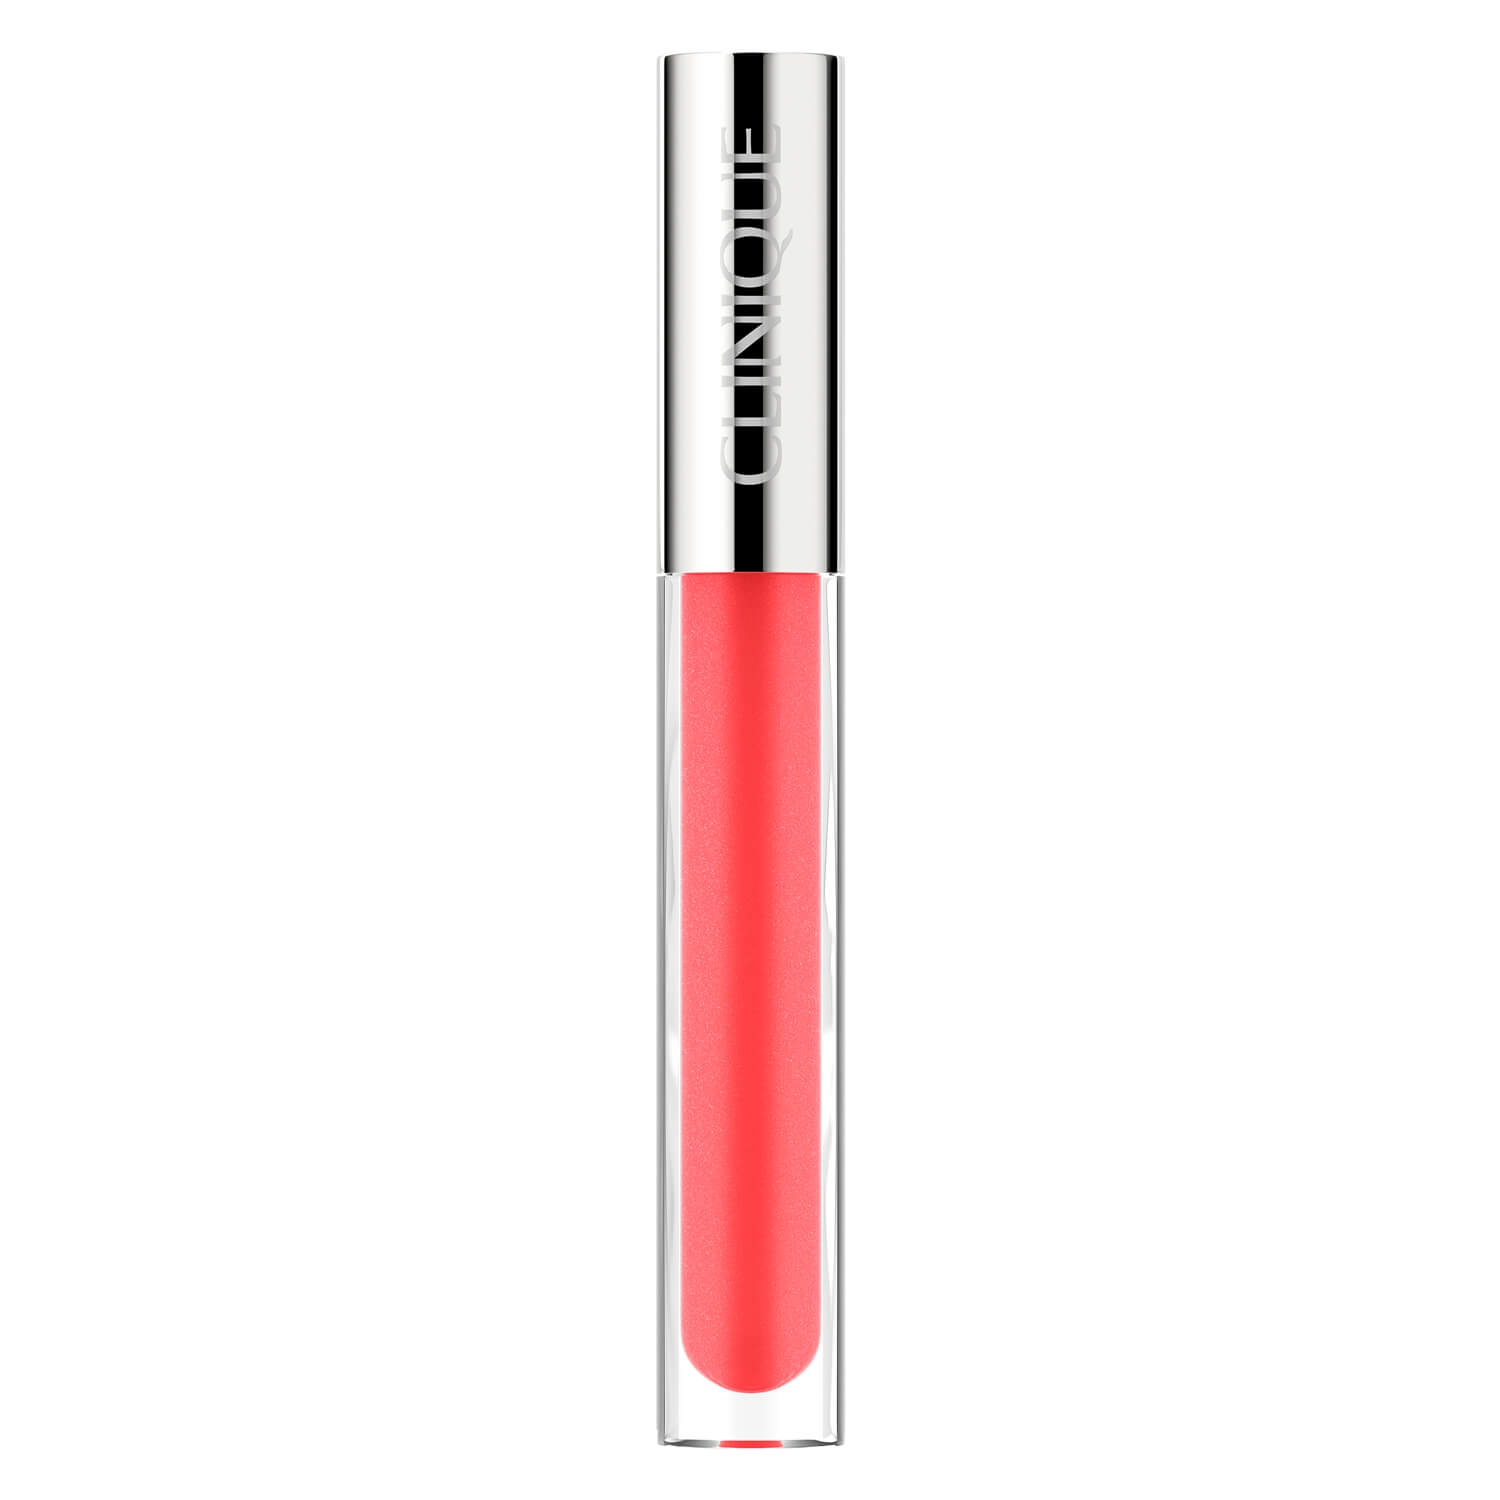 Produktbild von Clinique Lips - Pop Plush Creamy Lip Gloss 05 Rosewater Pop